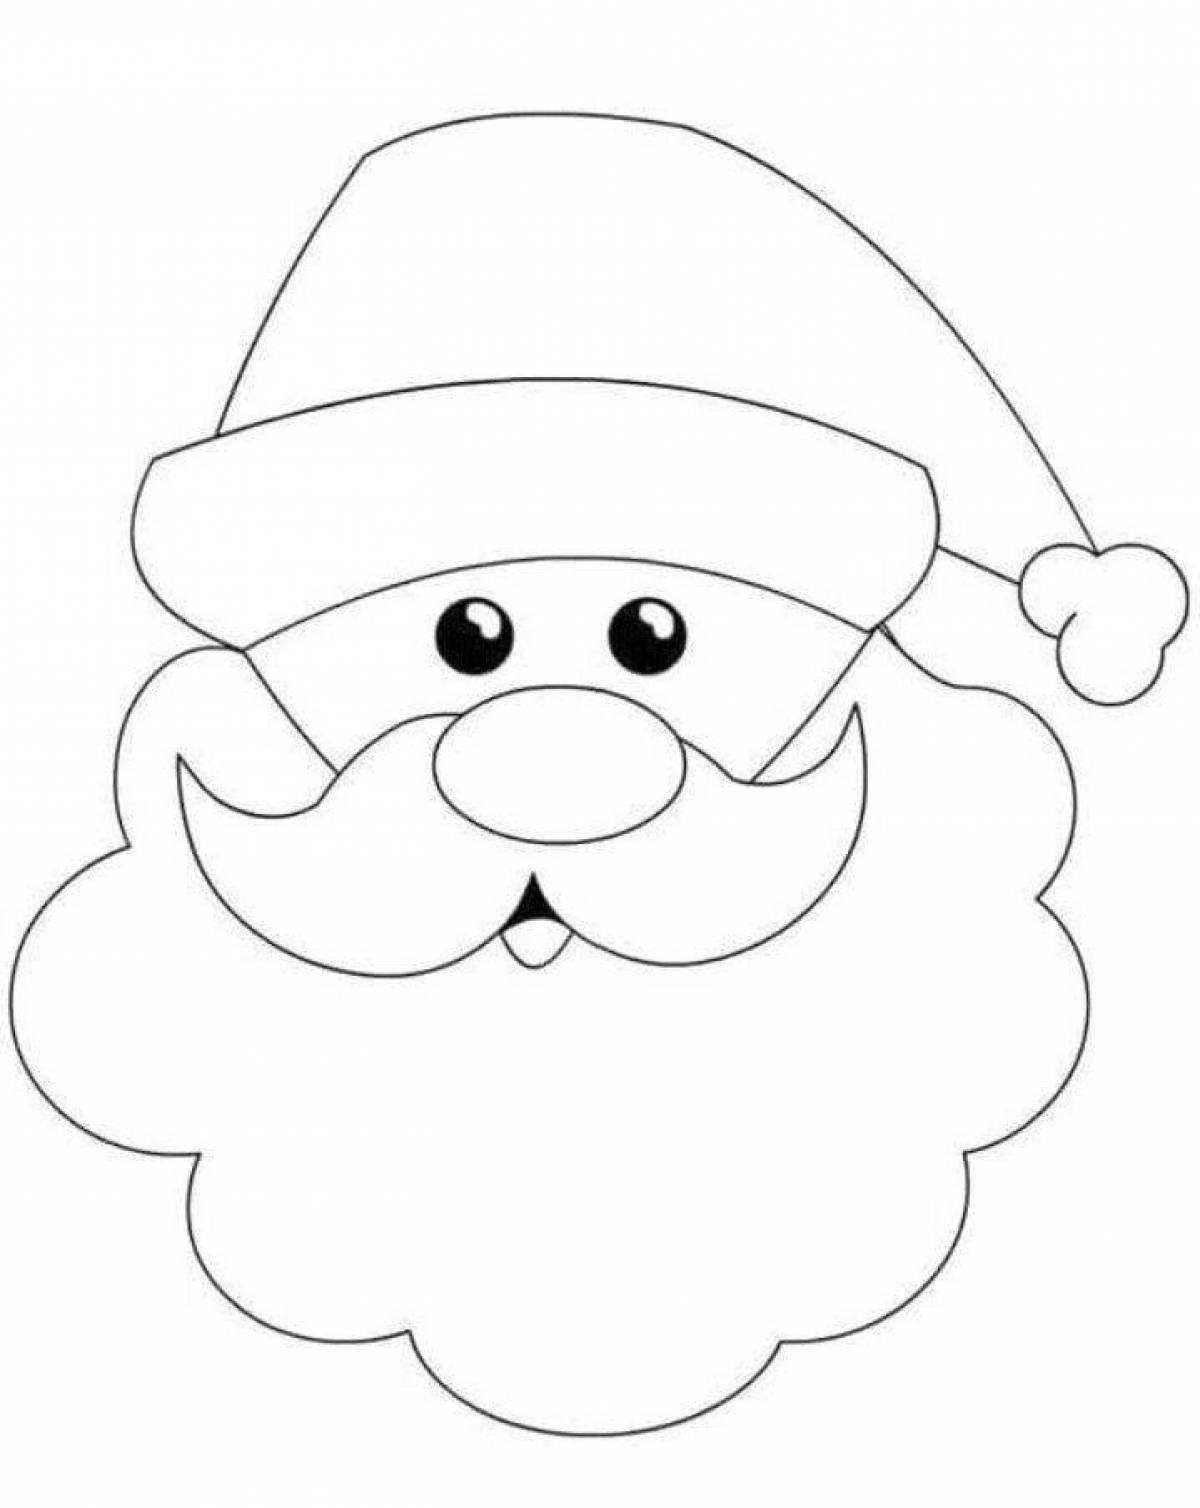 раскраска Лицо Санта счастлив со своей шляпе и длинной белой бородой